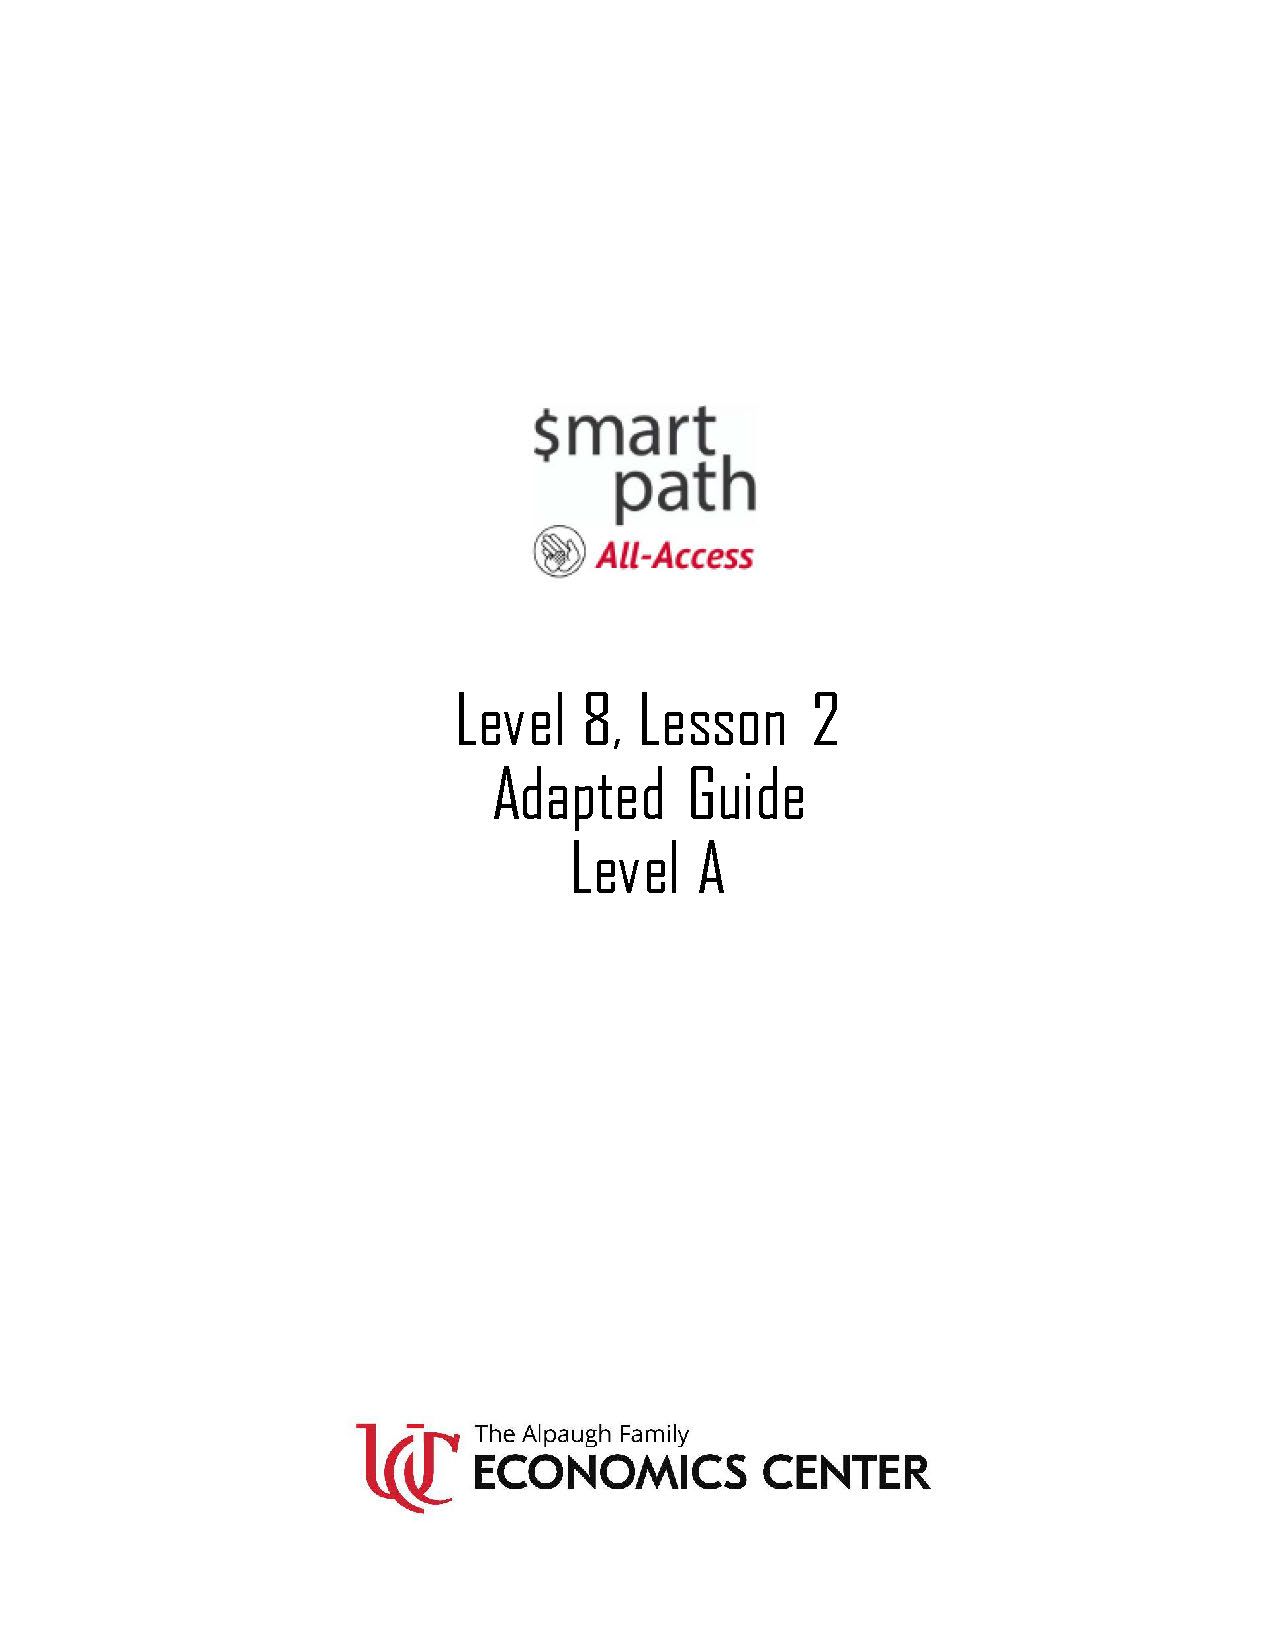 Level 8 Lesson 2